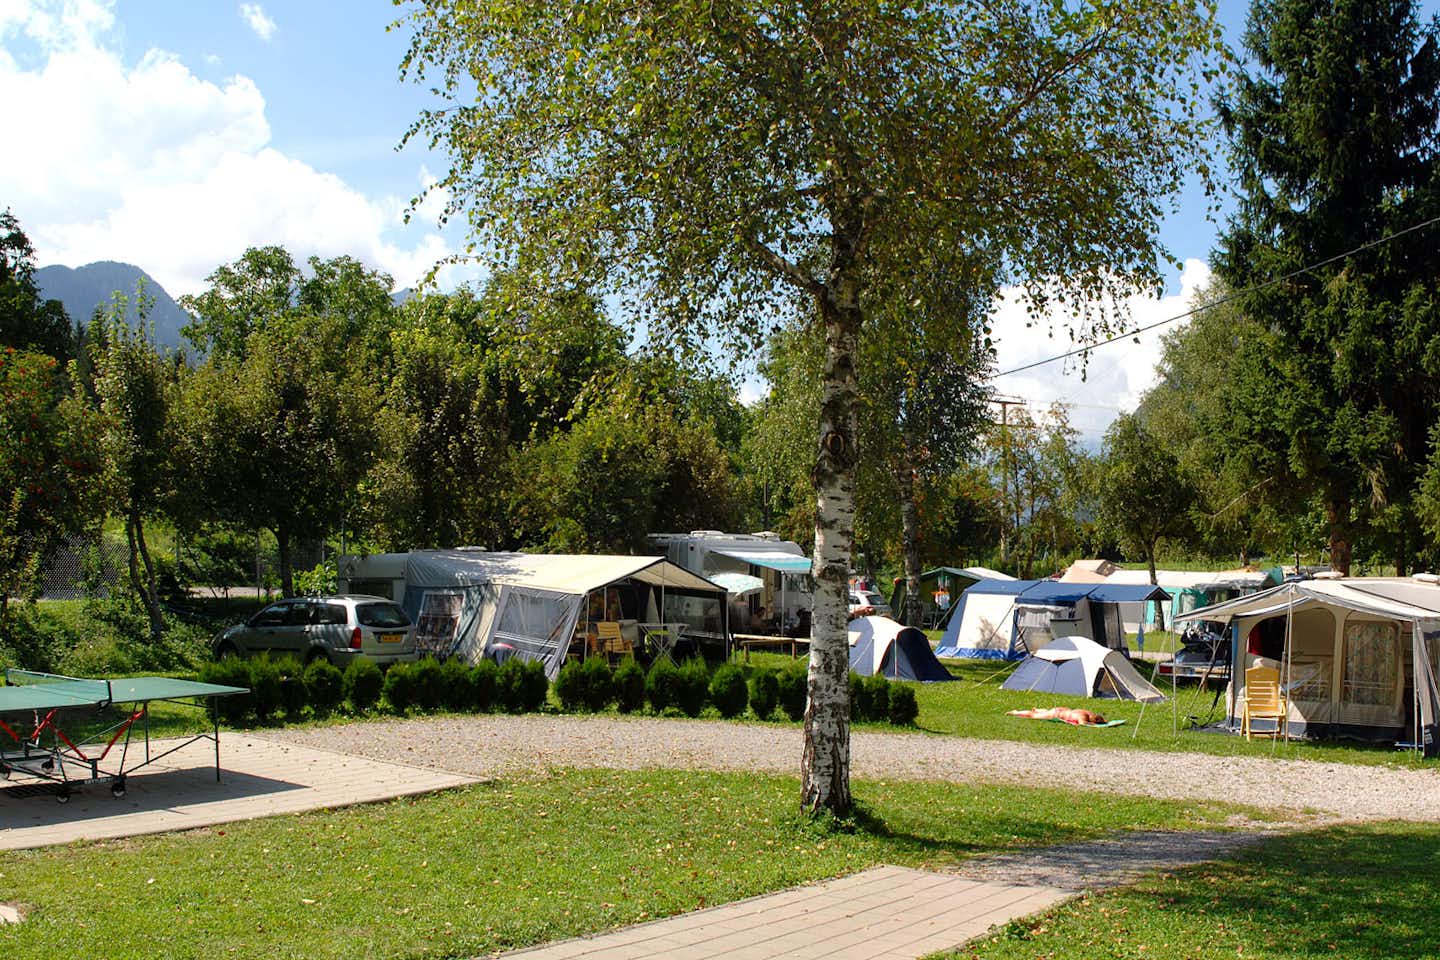 Familiencamping Oberdrauburg - Wohnwagen- und Zeltstellplatz vom Campingplatz zwischen Bäumen mit Blick auf die Berge